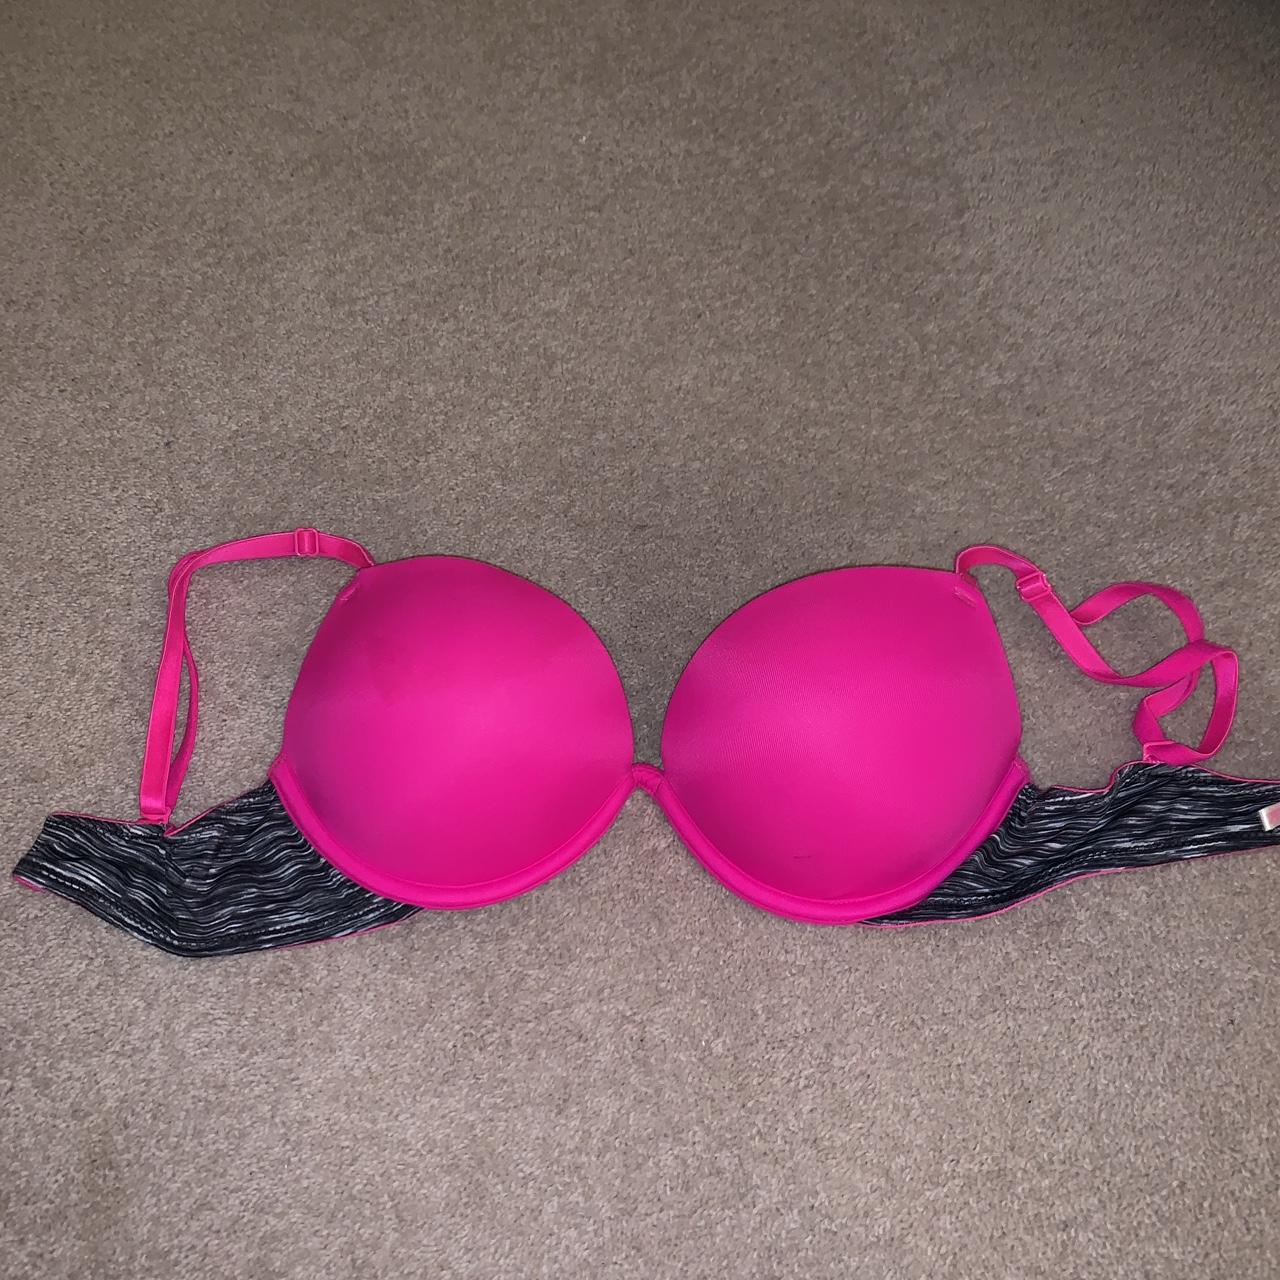 Two 32B Pink/Victoria's Secret lightly lined bras. - Depop